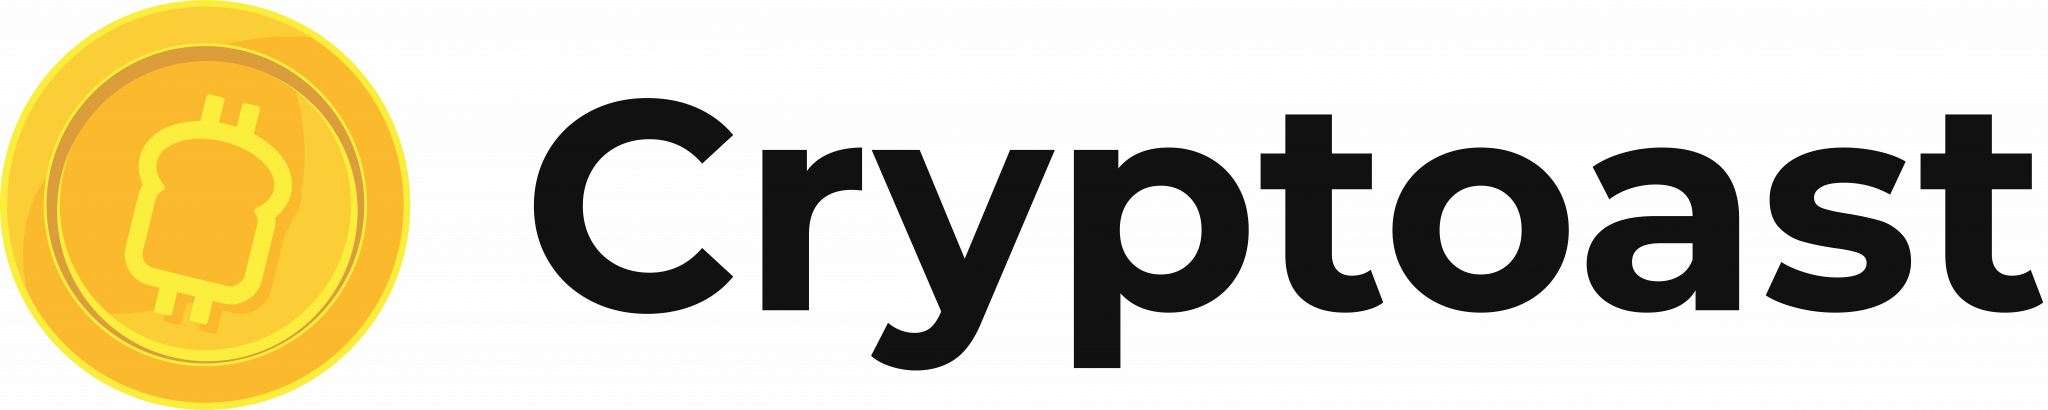 Cryptoast logo fond clair